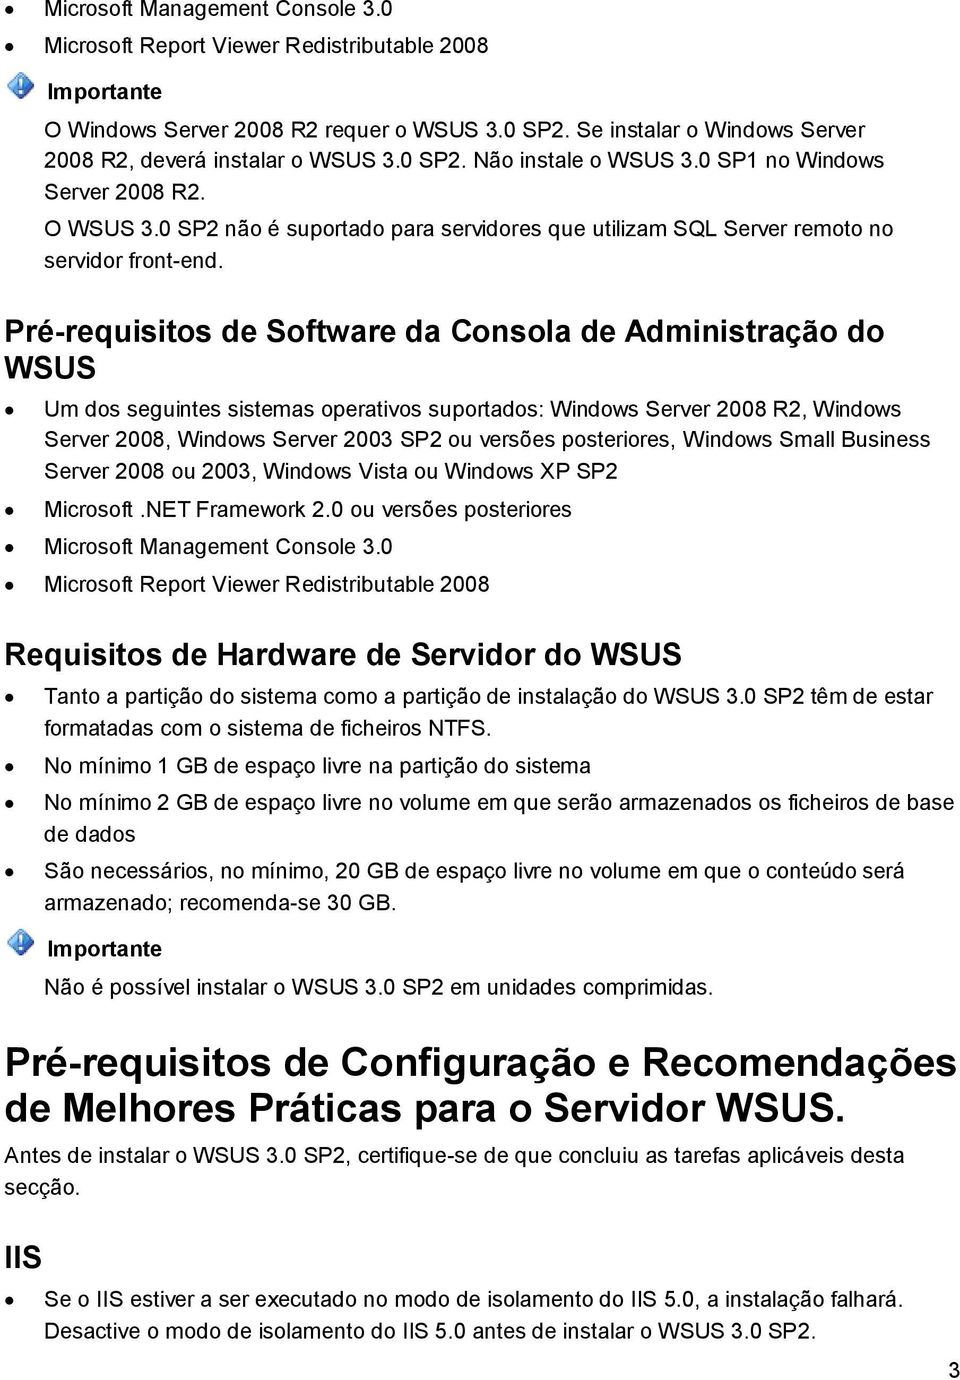 Pré-requisitos de Software da Consola de Administração do WSUS Um dos seguintes sistemas operativos suportados: Windows Server 2008 R2, Windows Server 2008, Windows Server 2003 SP2 ou versões